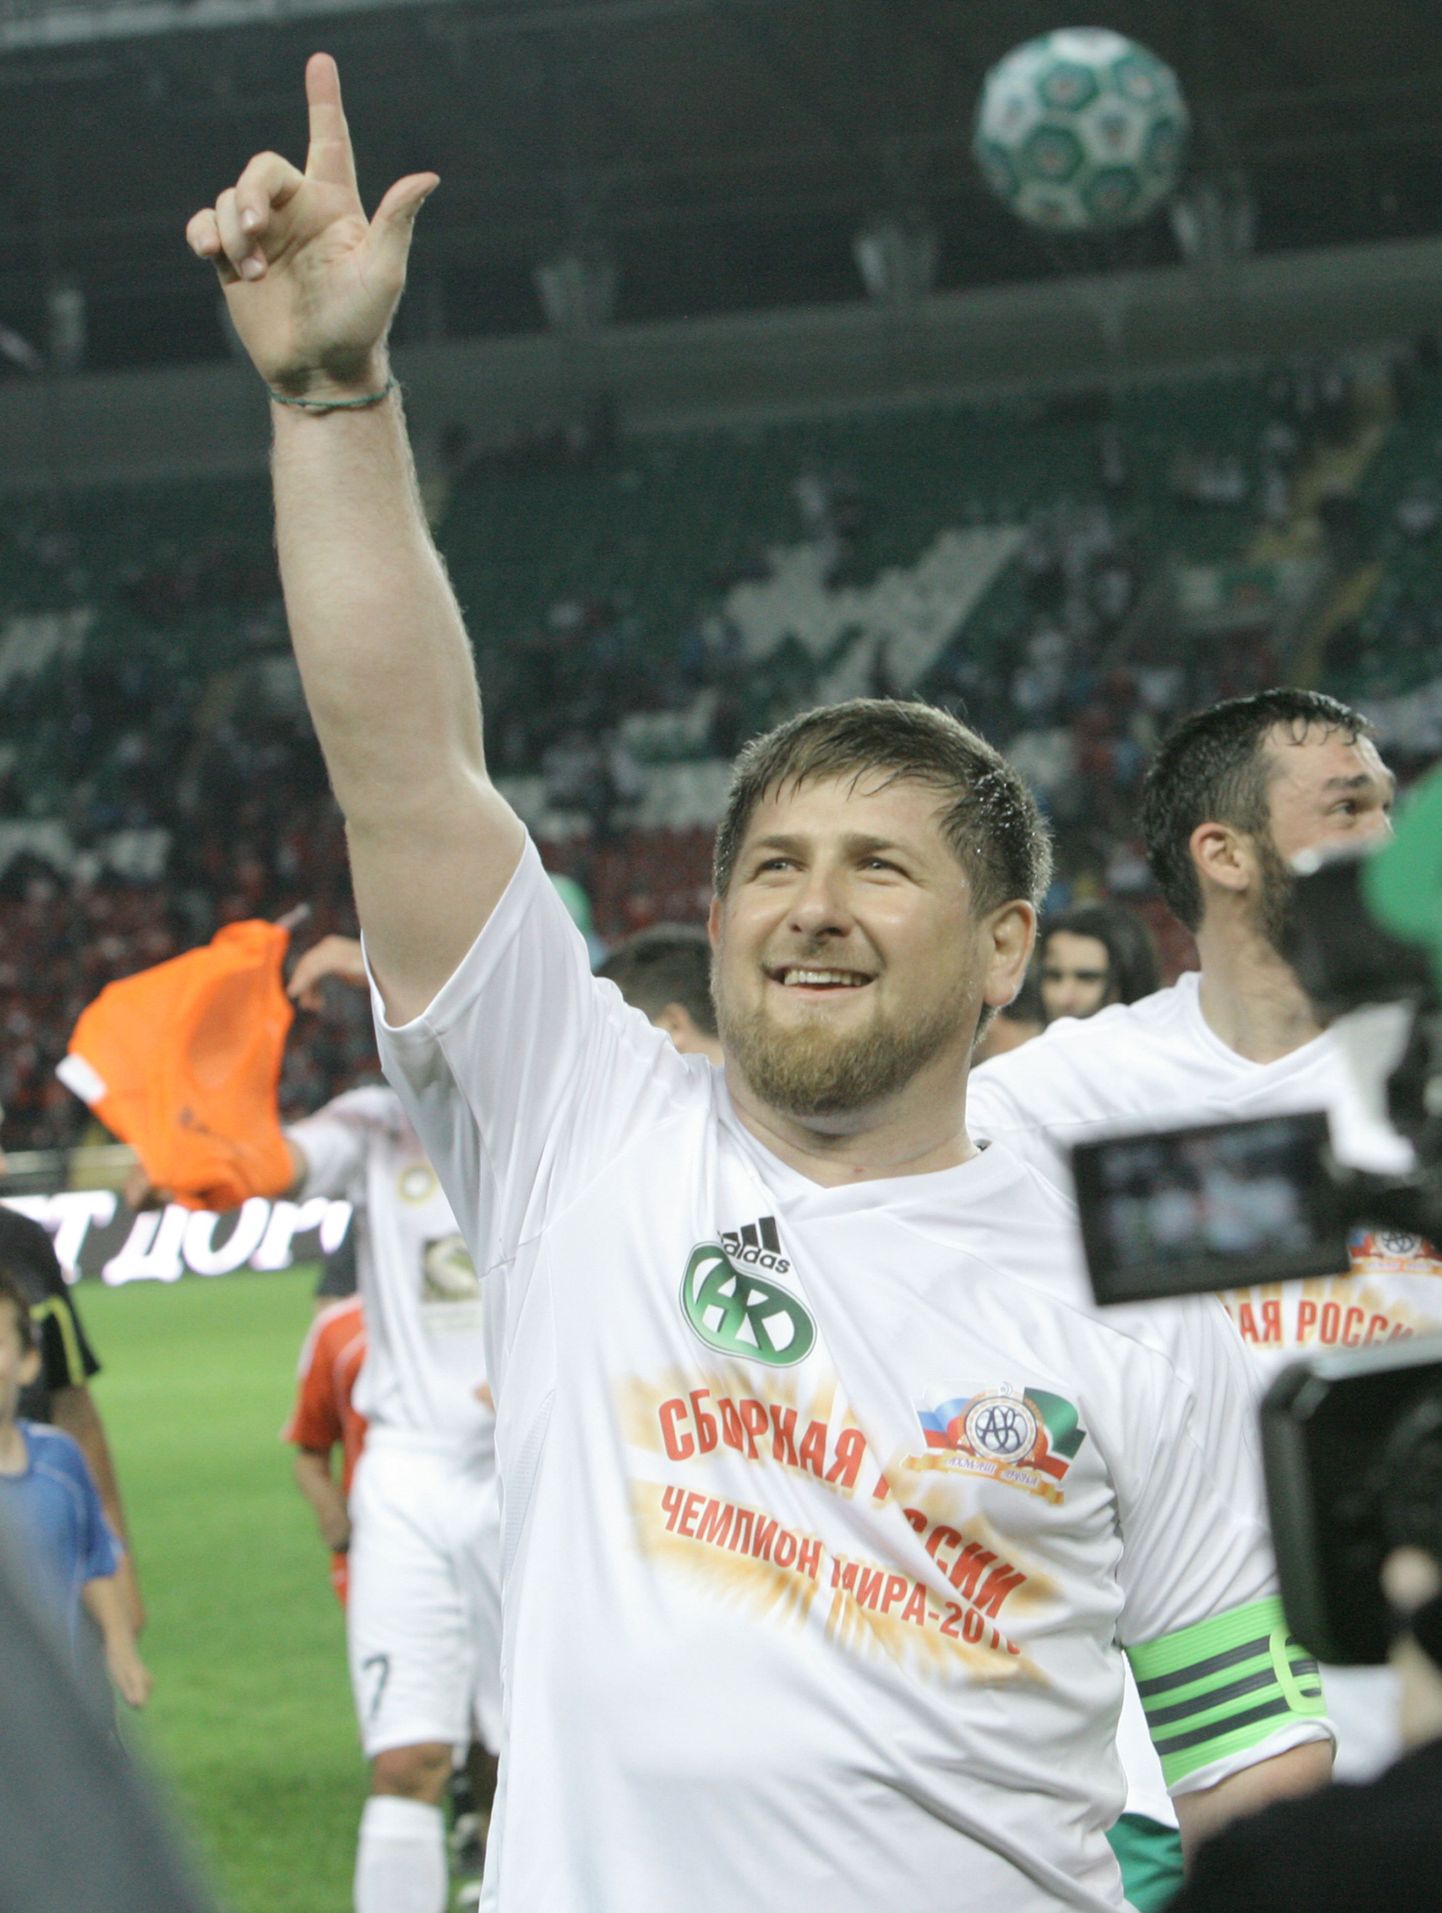 Президент Чеченской Республики Ахмад Кадыров иногда сам участвует в футбольных матчах.